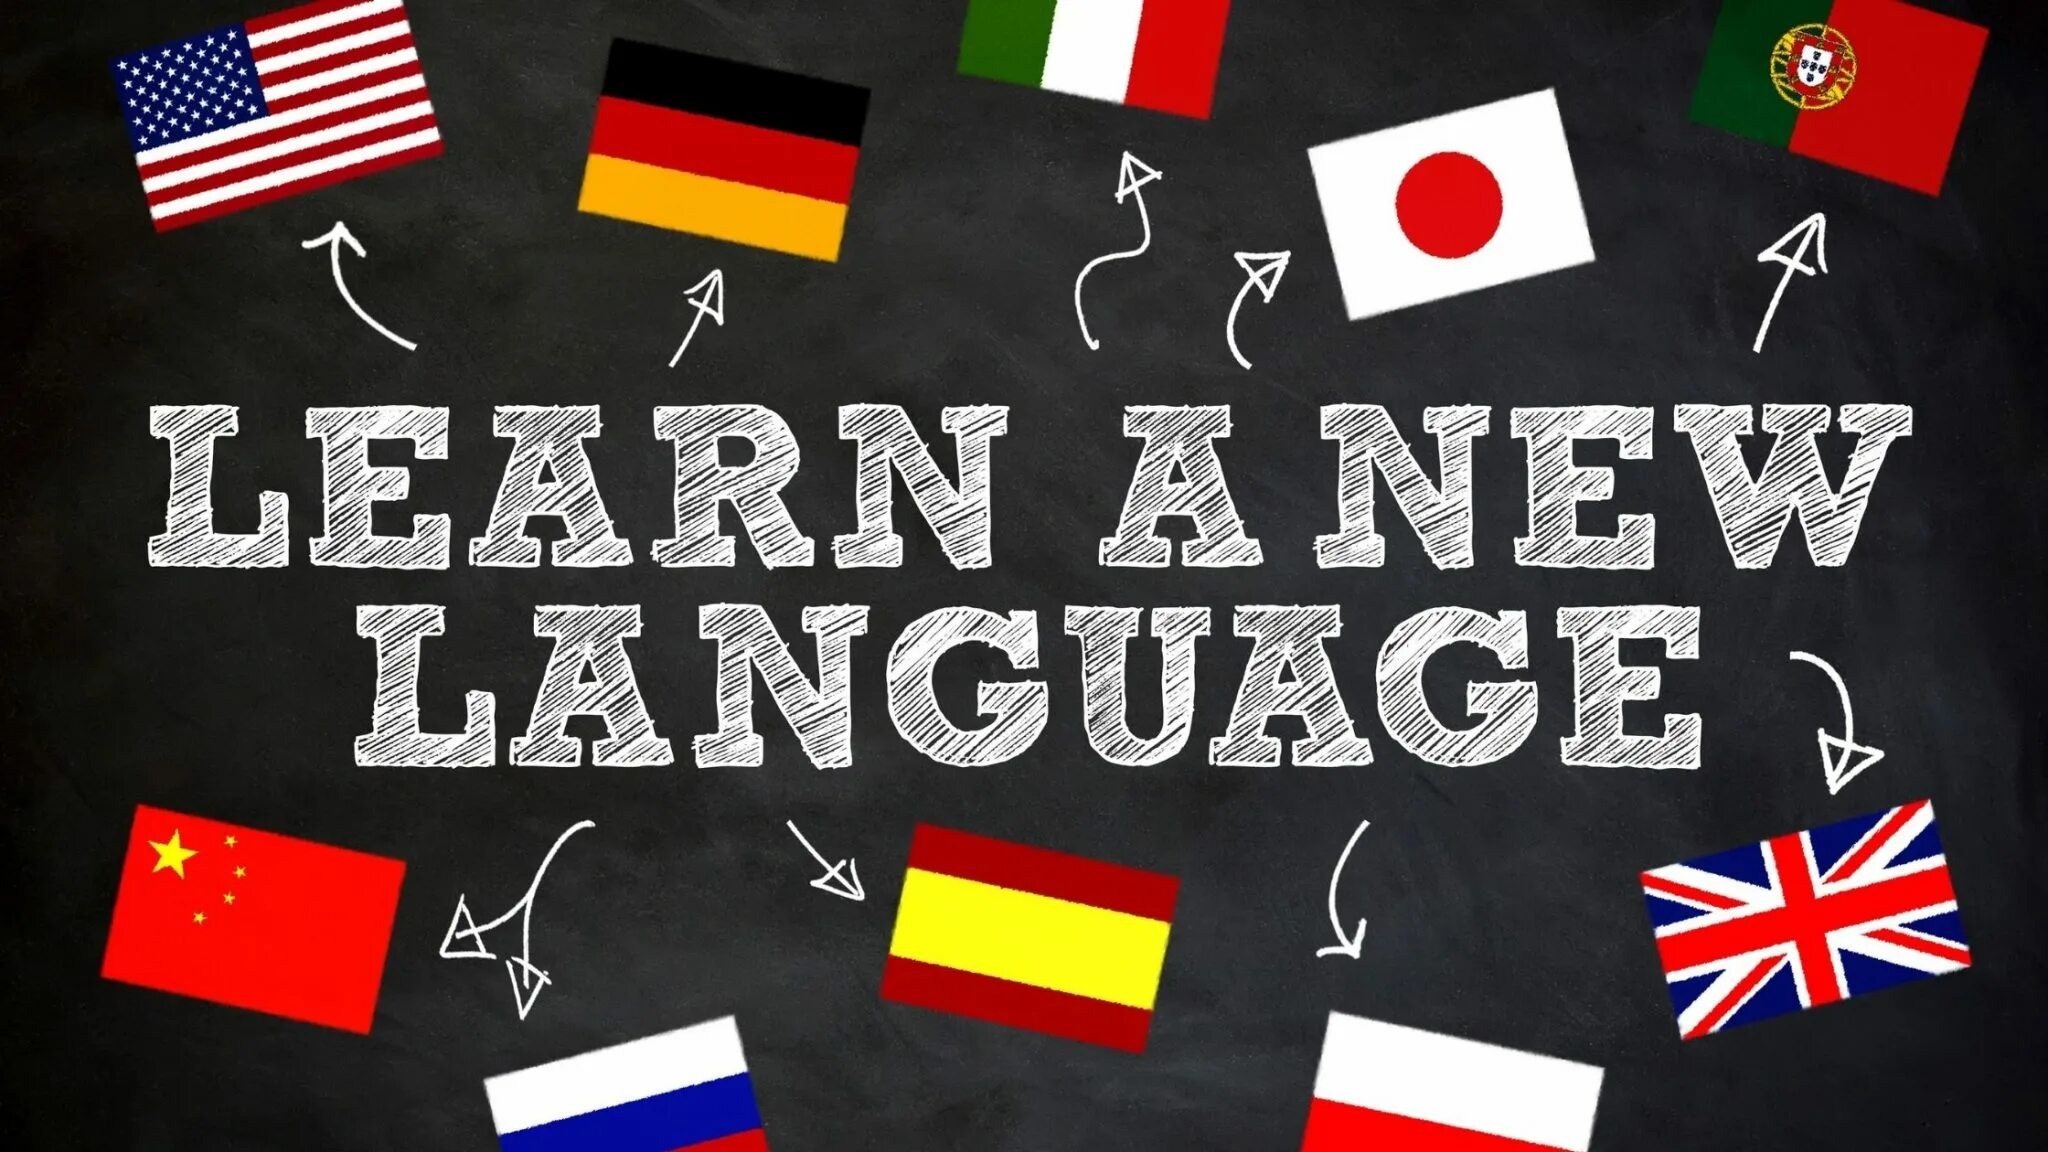 Иностранные языки. Иностранные языки арт. Learning languages. My new language